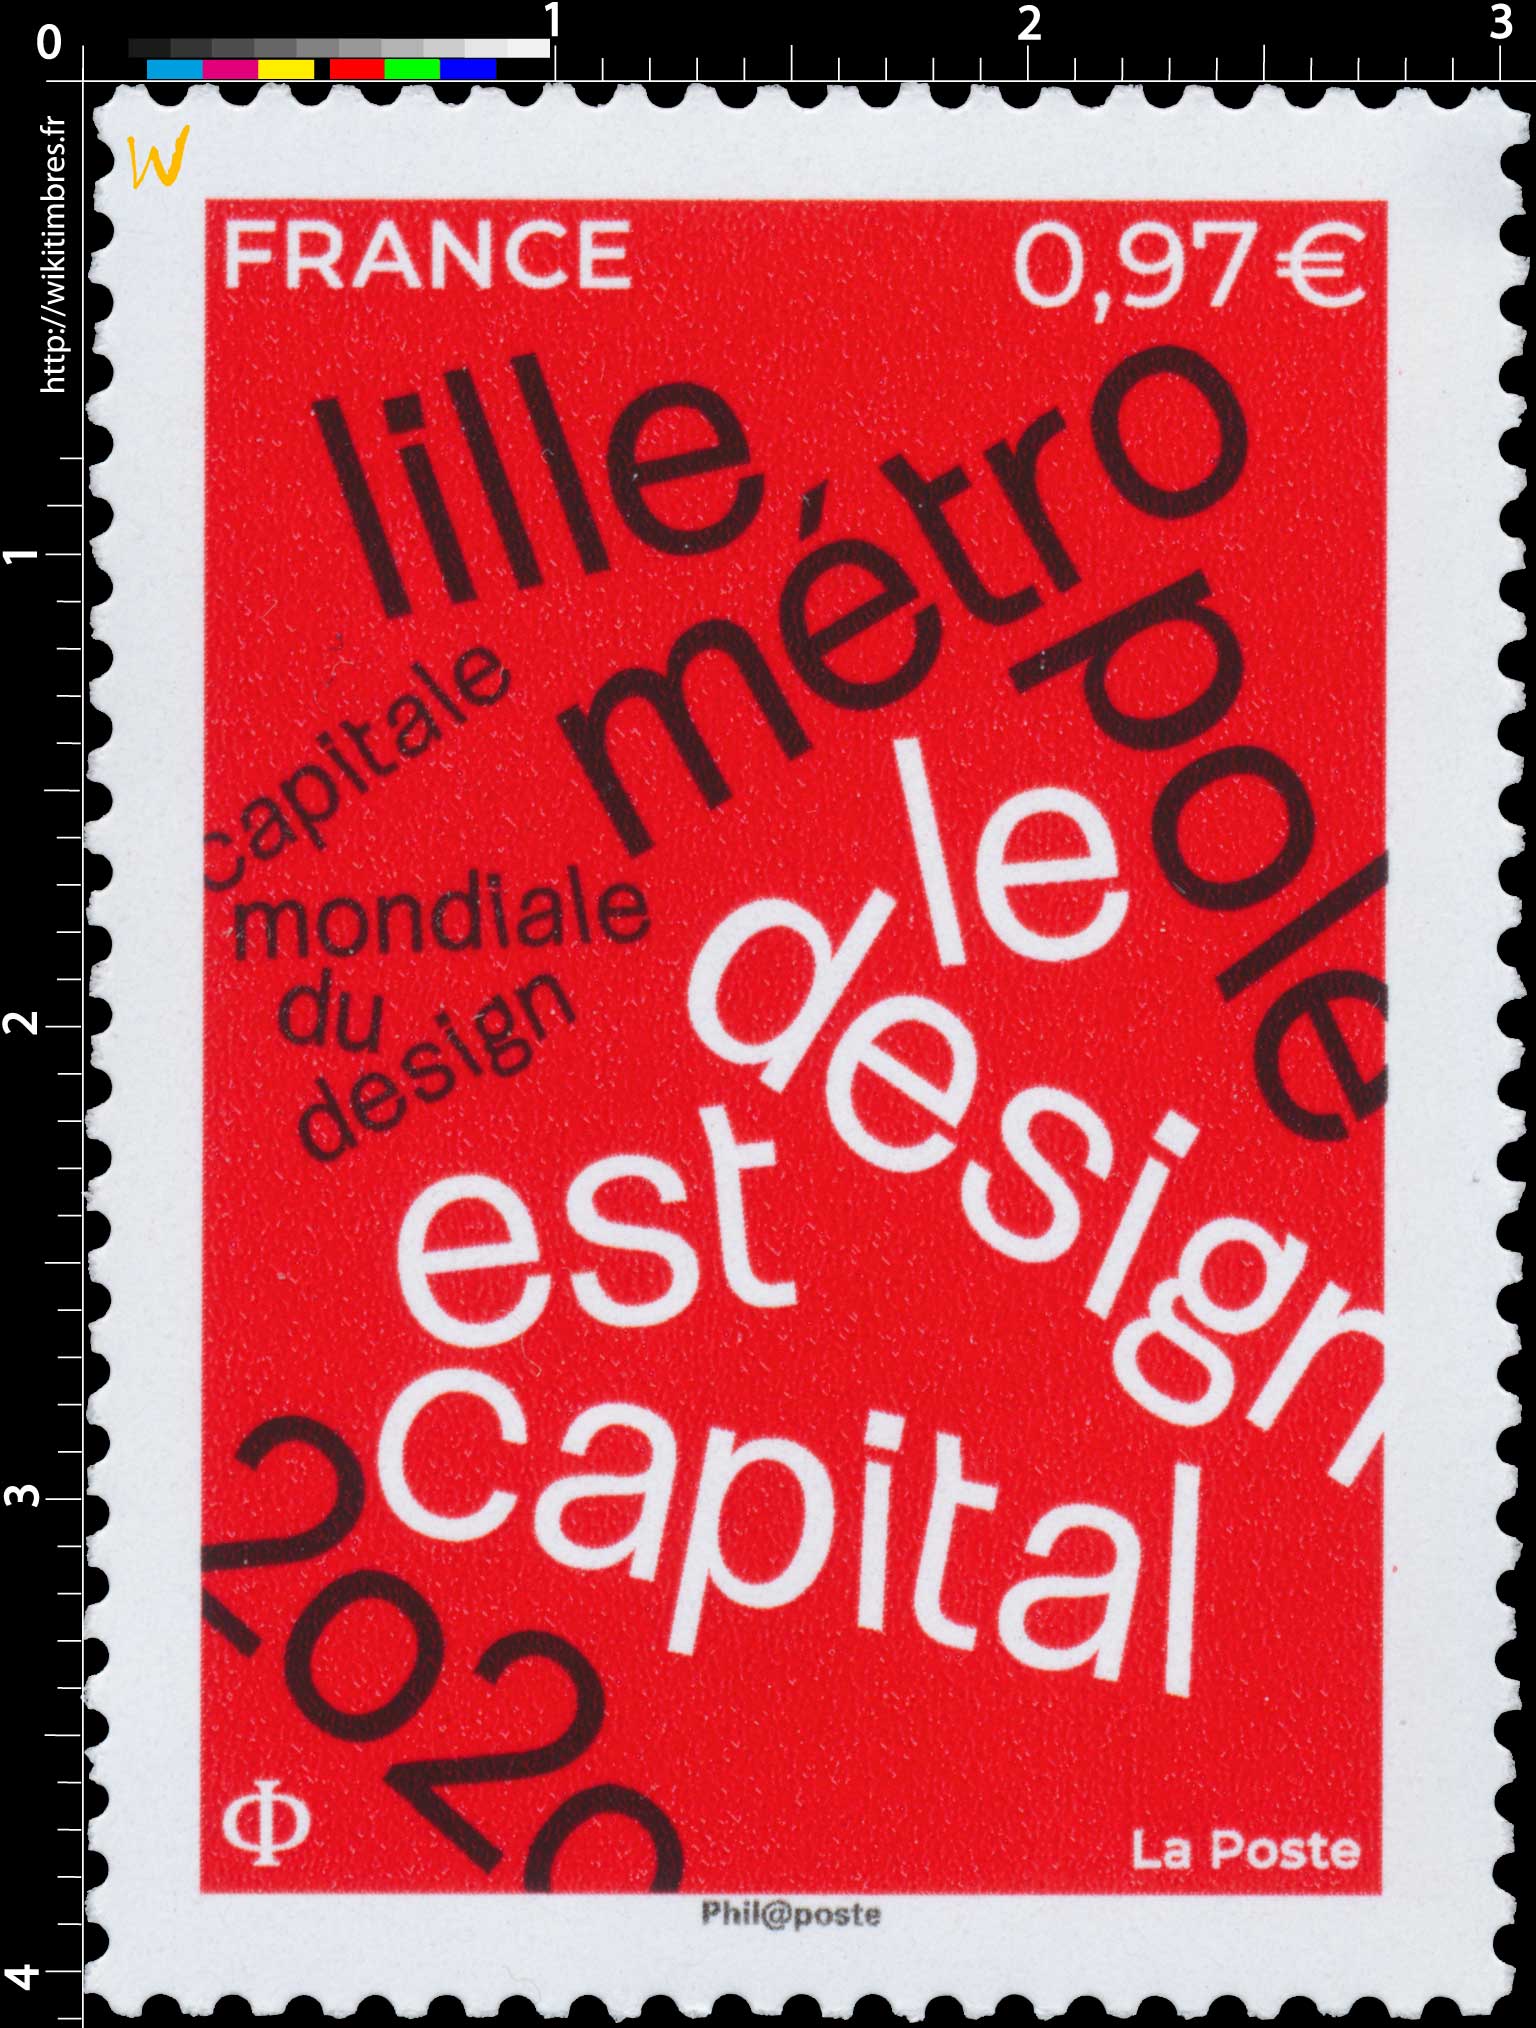 2020 Lille Métropole Capitale Mondiale du Design